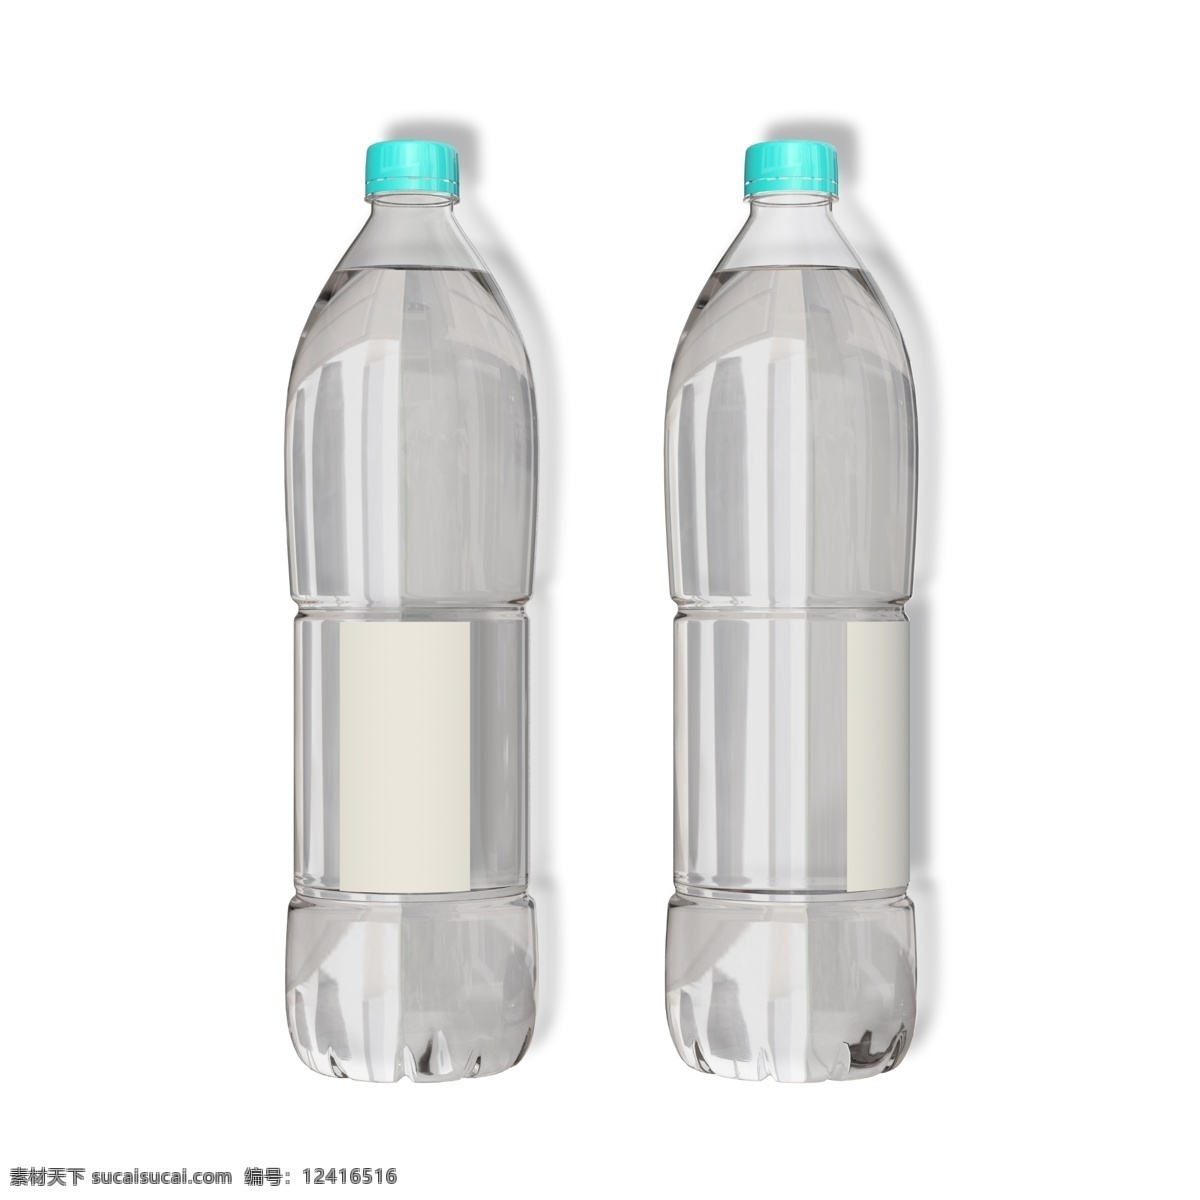 塑料 瓶装 矿泉水 塑料瓶 纯净水 瓶装水